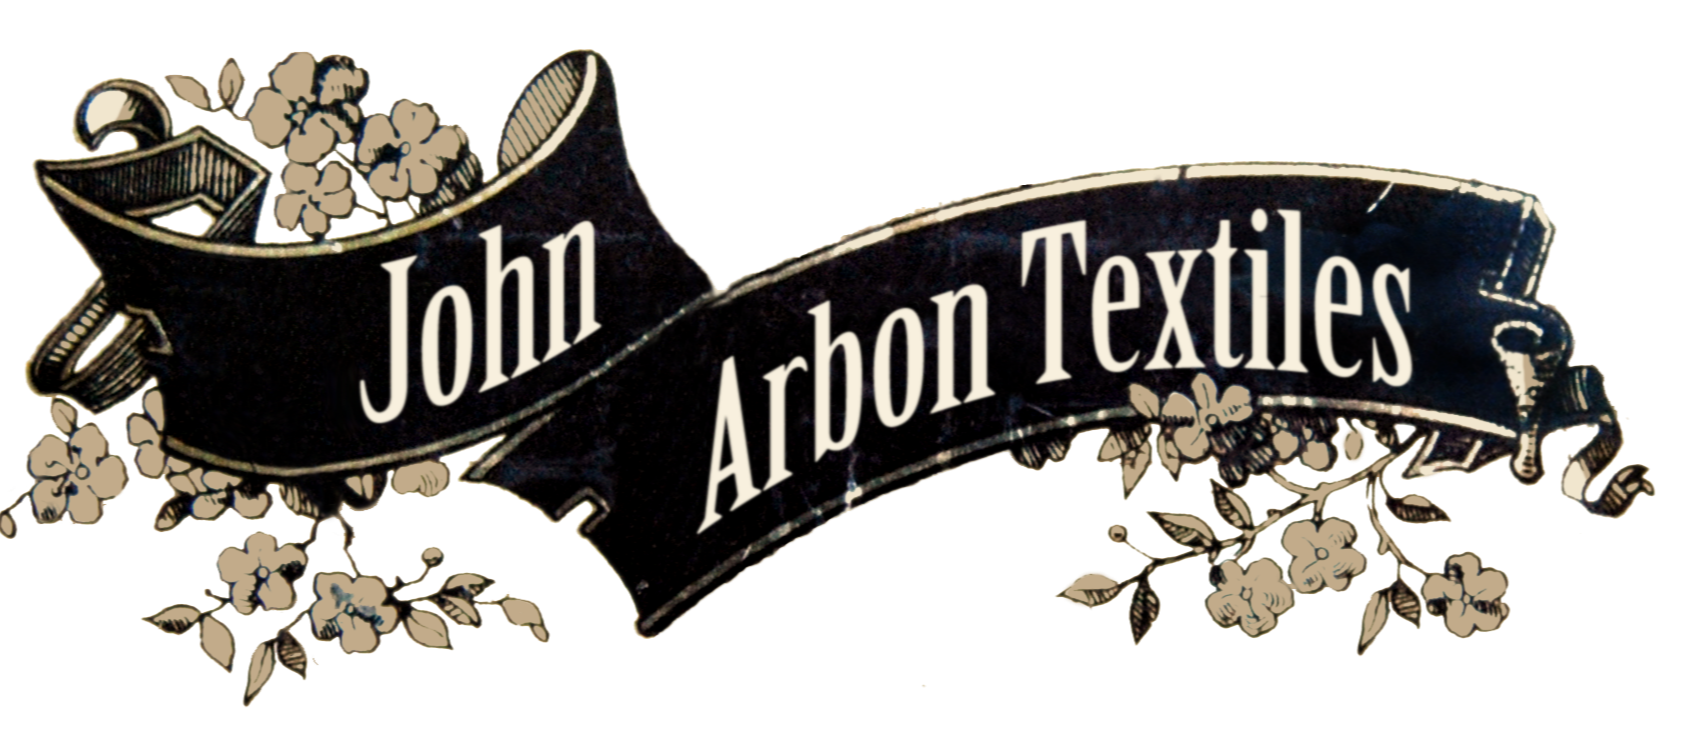 logo for John Arbon Textiles